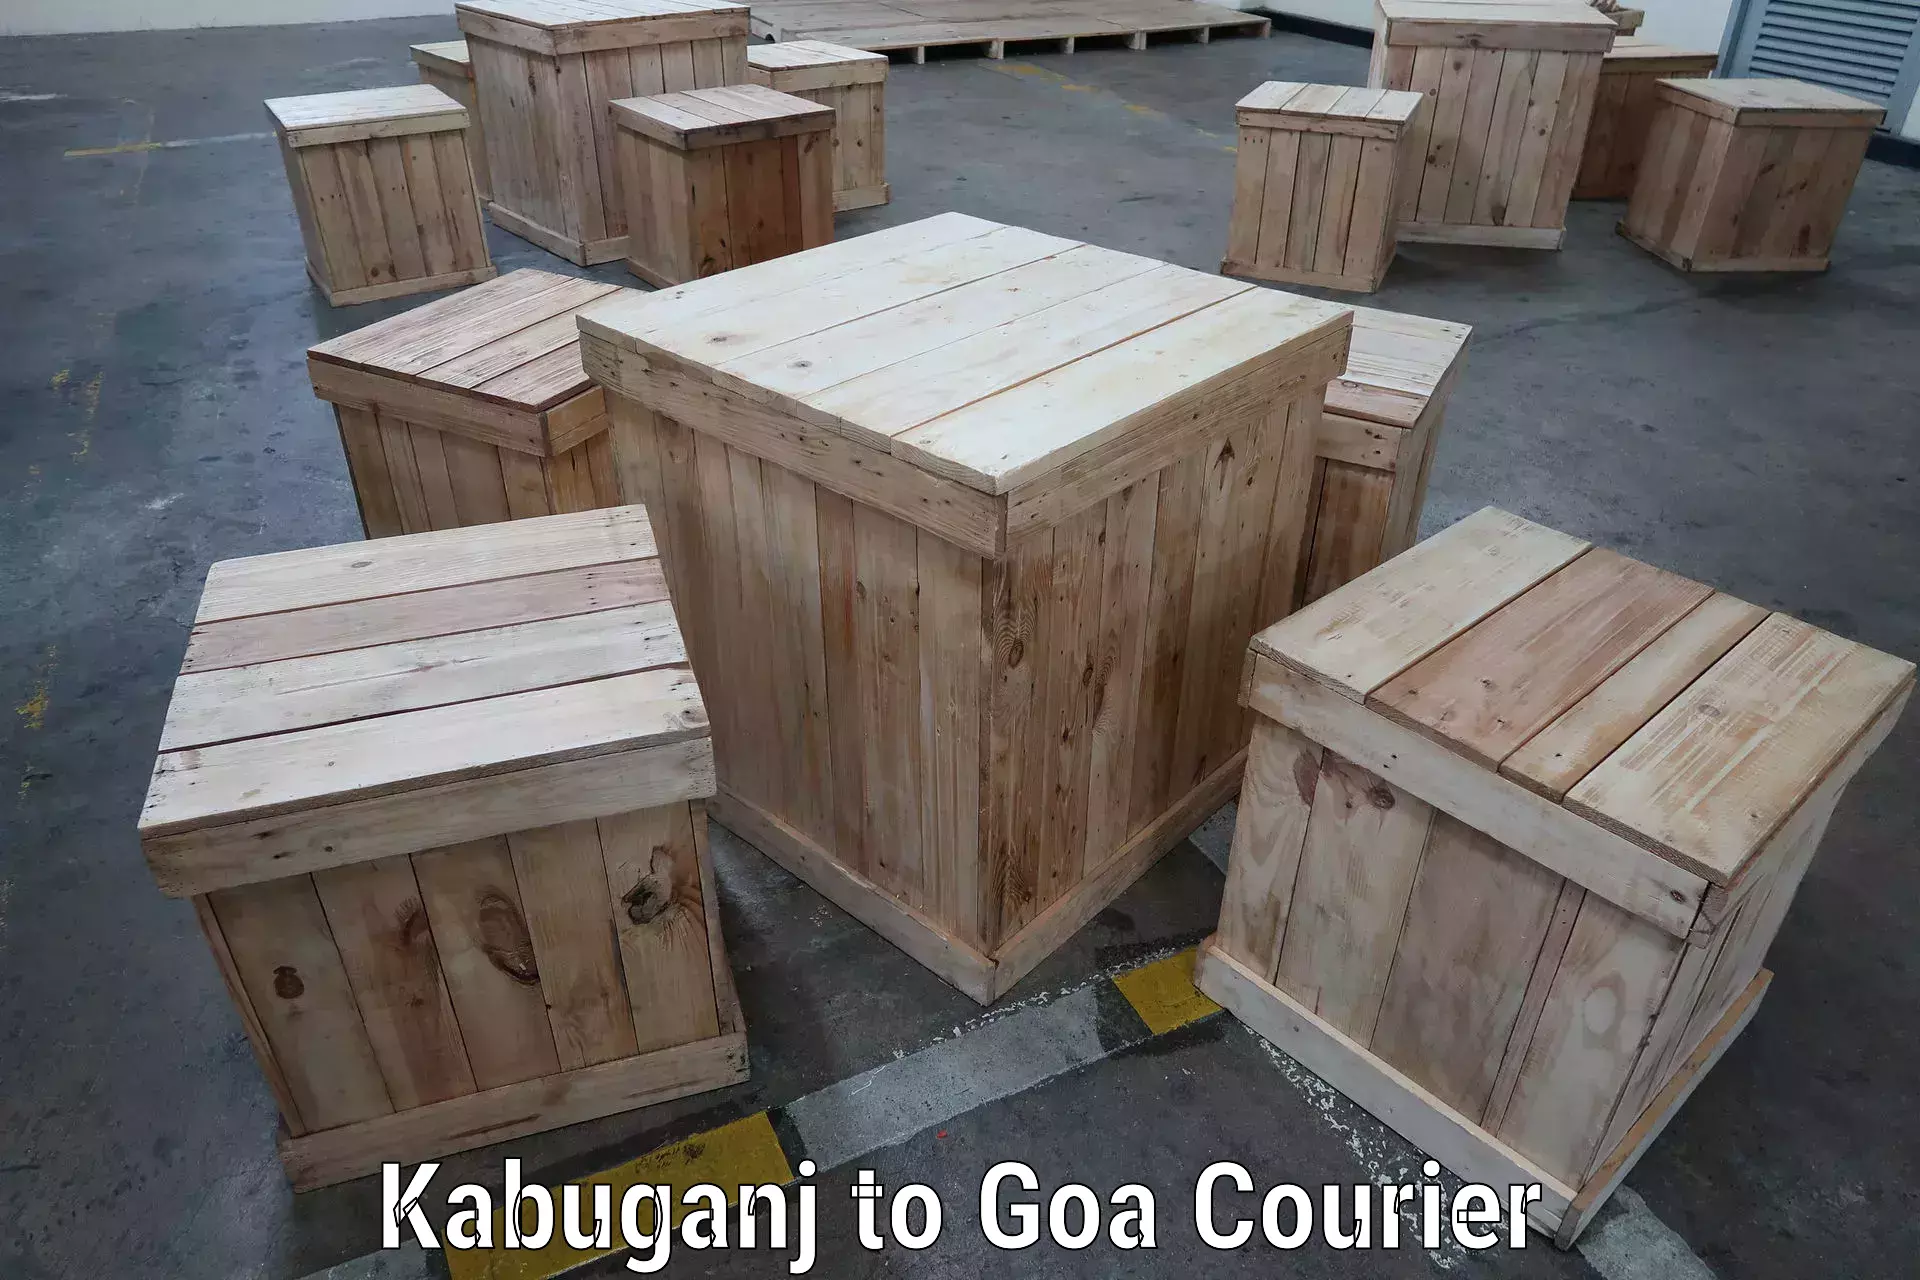 Seamless shipping experience Kabuganj to Goa